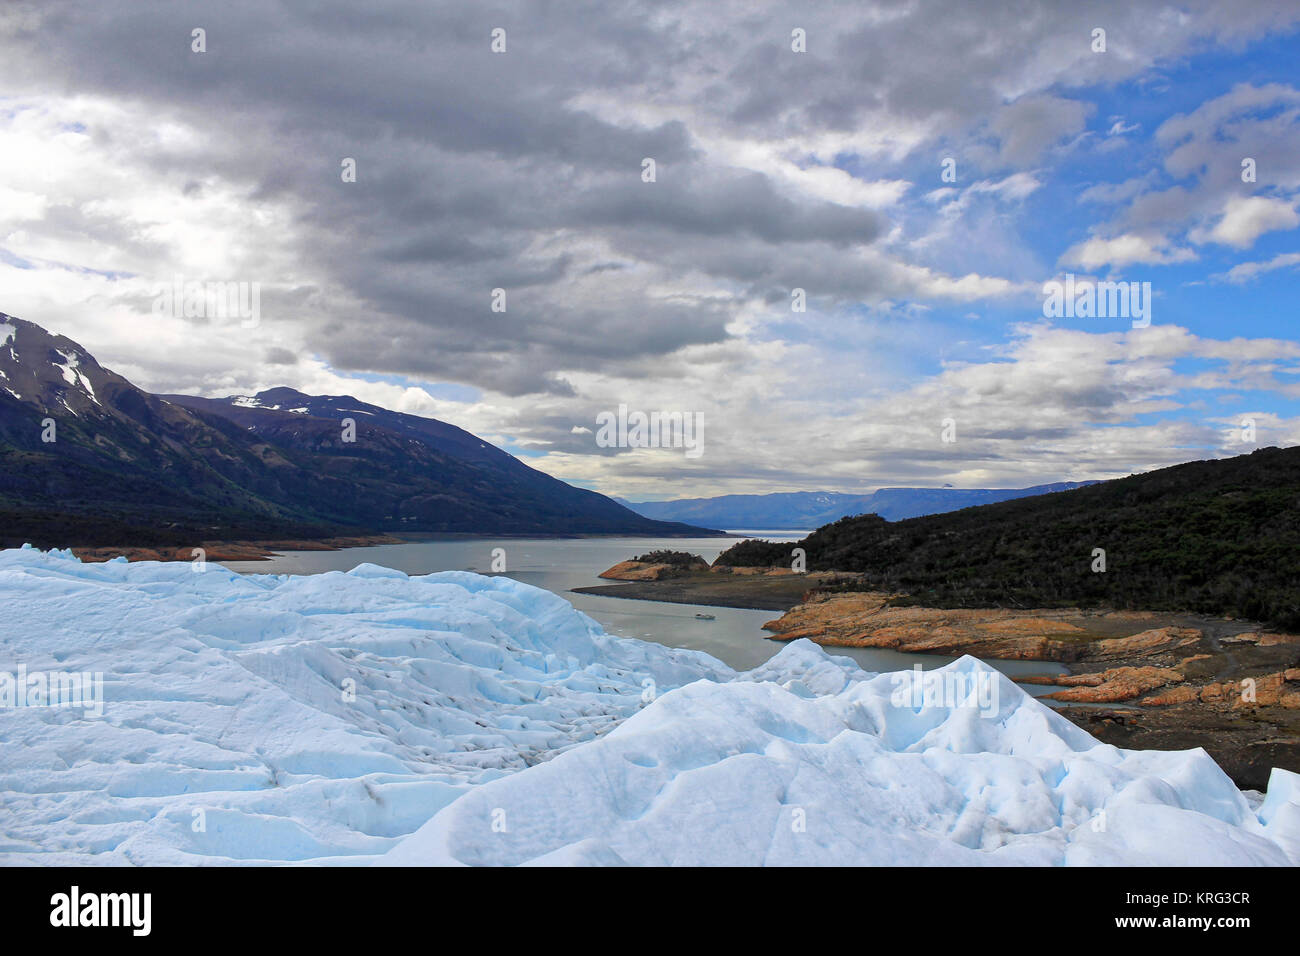 Lago Argentino from Perito Moreno glacier, Argentina. Stock Photo